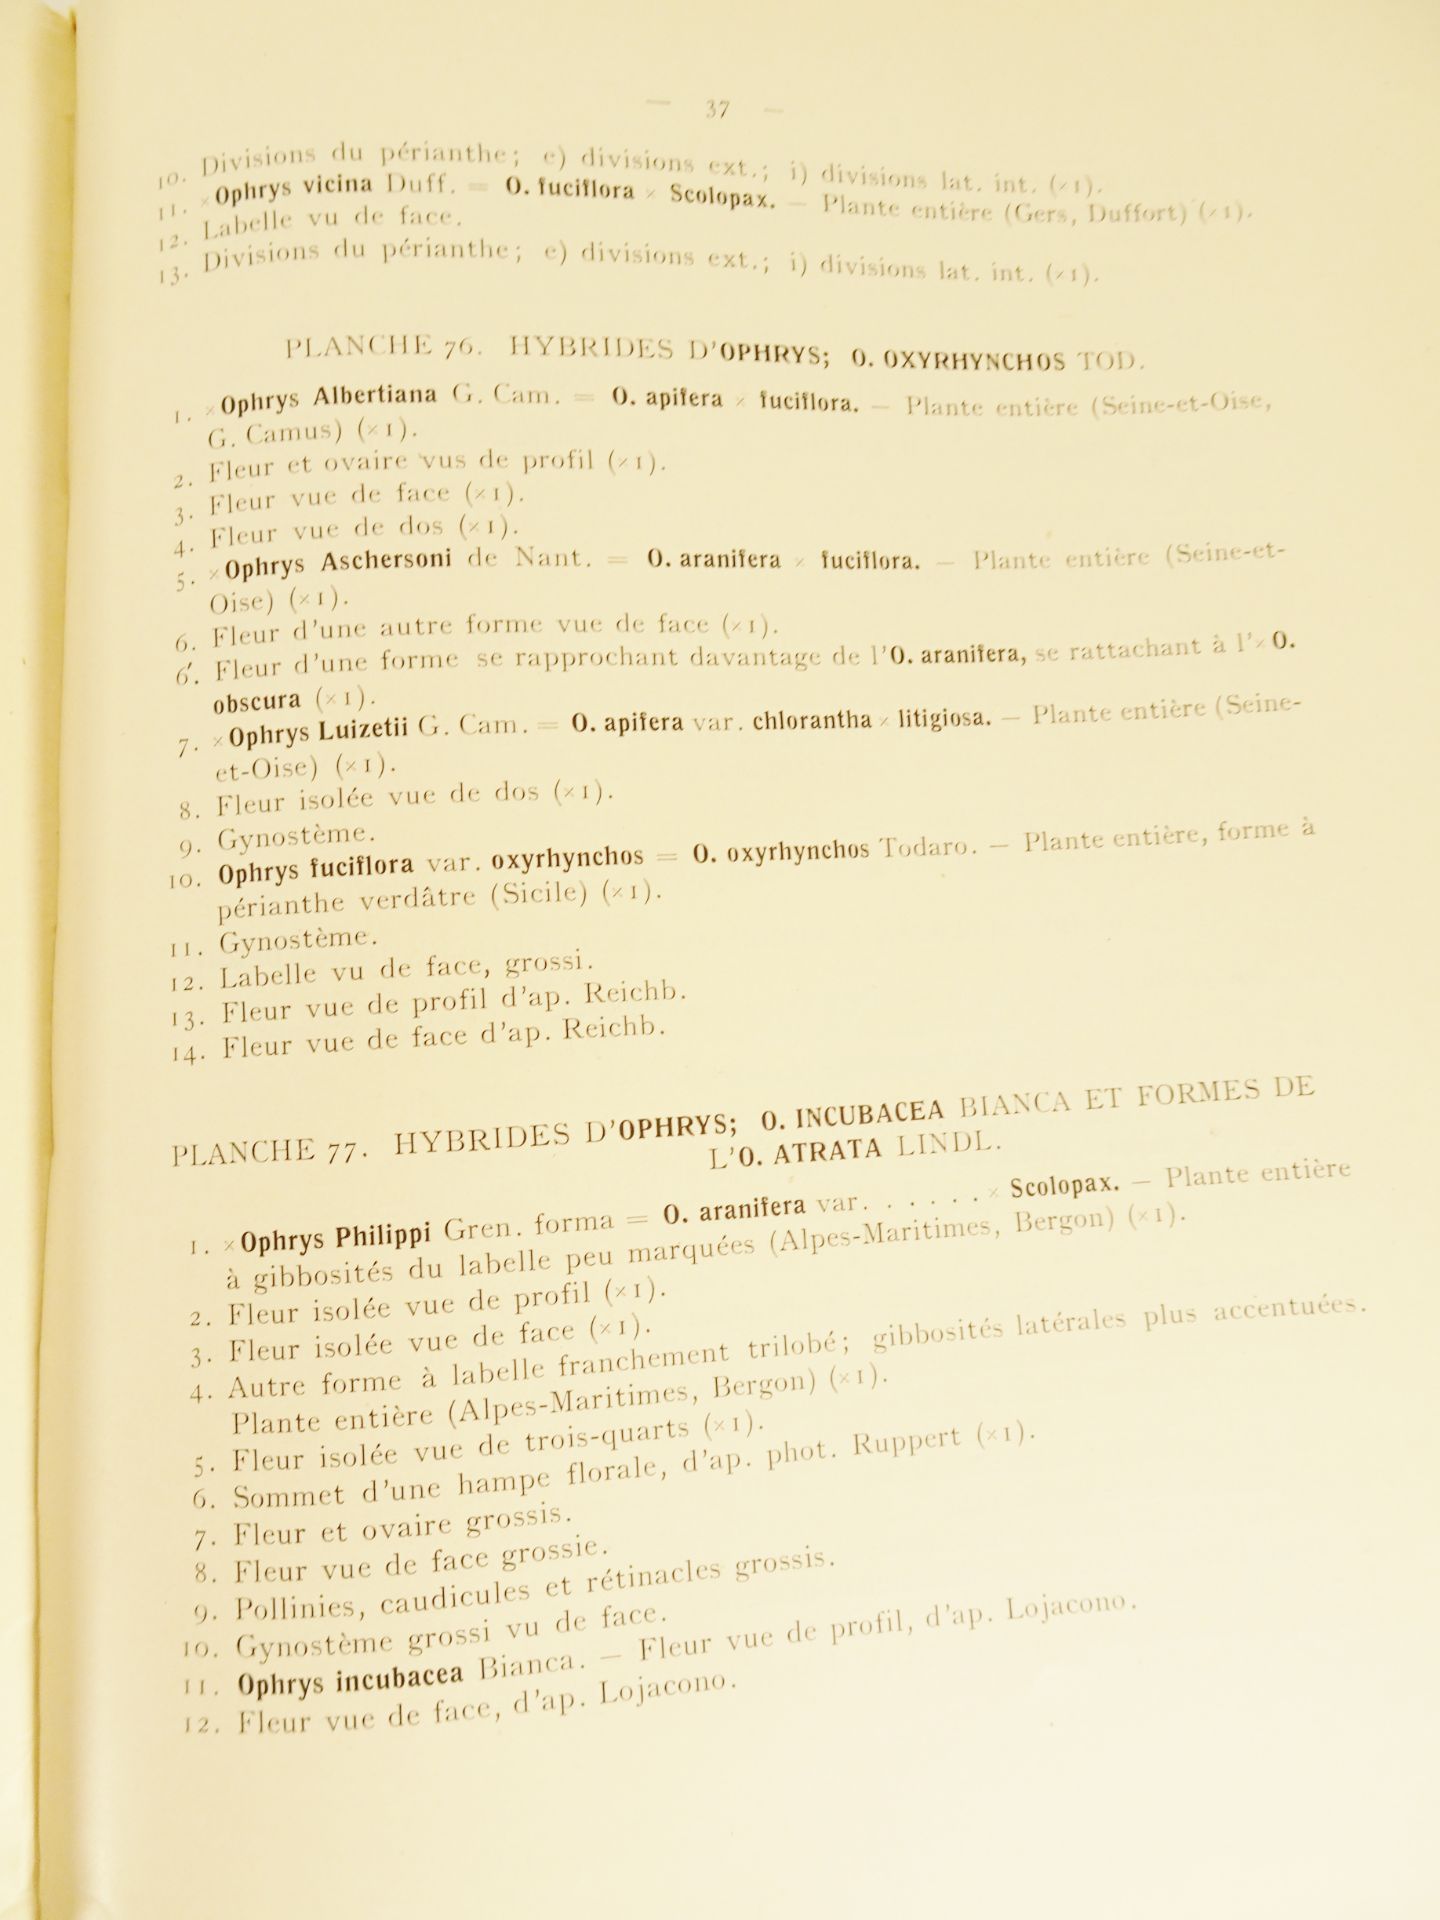 |Orchidaceae| Camus E.G., "Iconographie des Orchidées d'Europe et du Bassin Méditerranéen", 1921 - Bild 5 aus 14